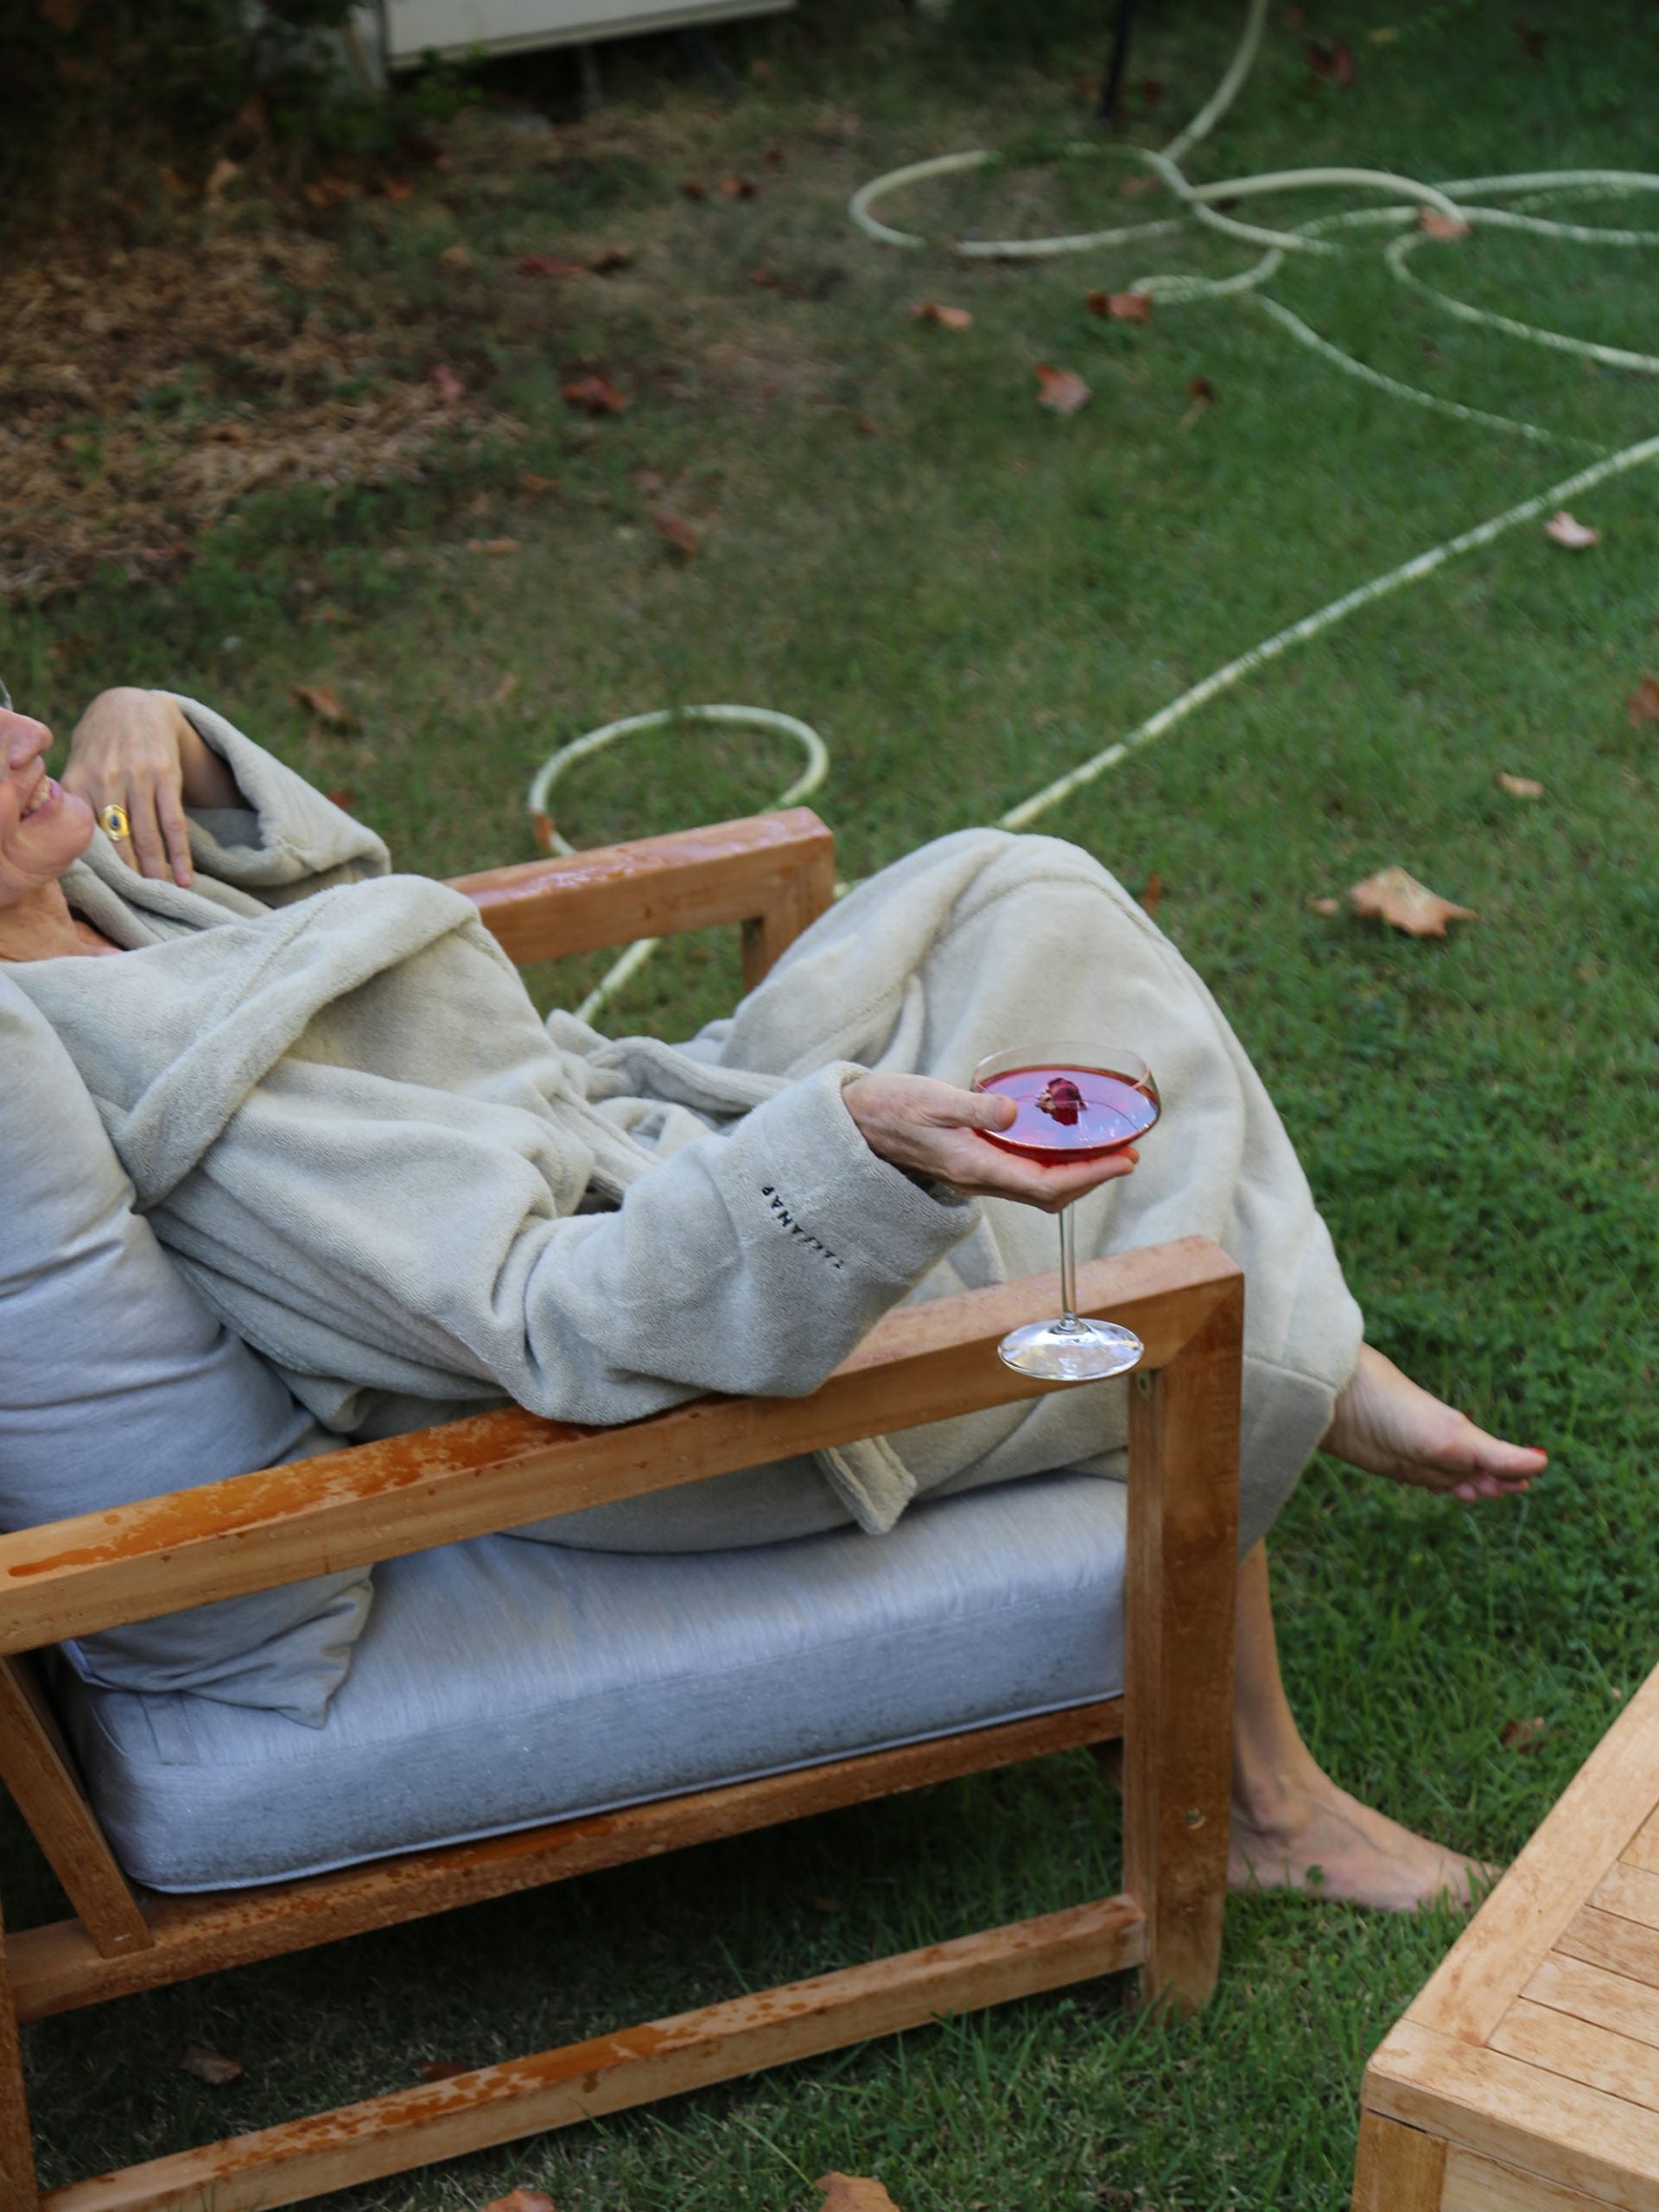 אישה יושבת על כיסא בחצר עם חלוק רחצה וכוס שמפנייה בידה